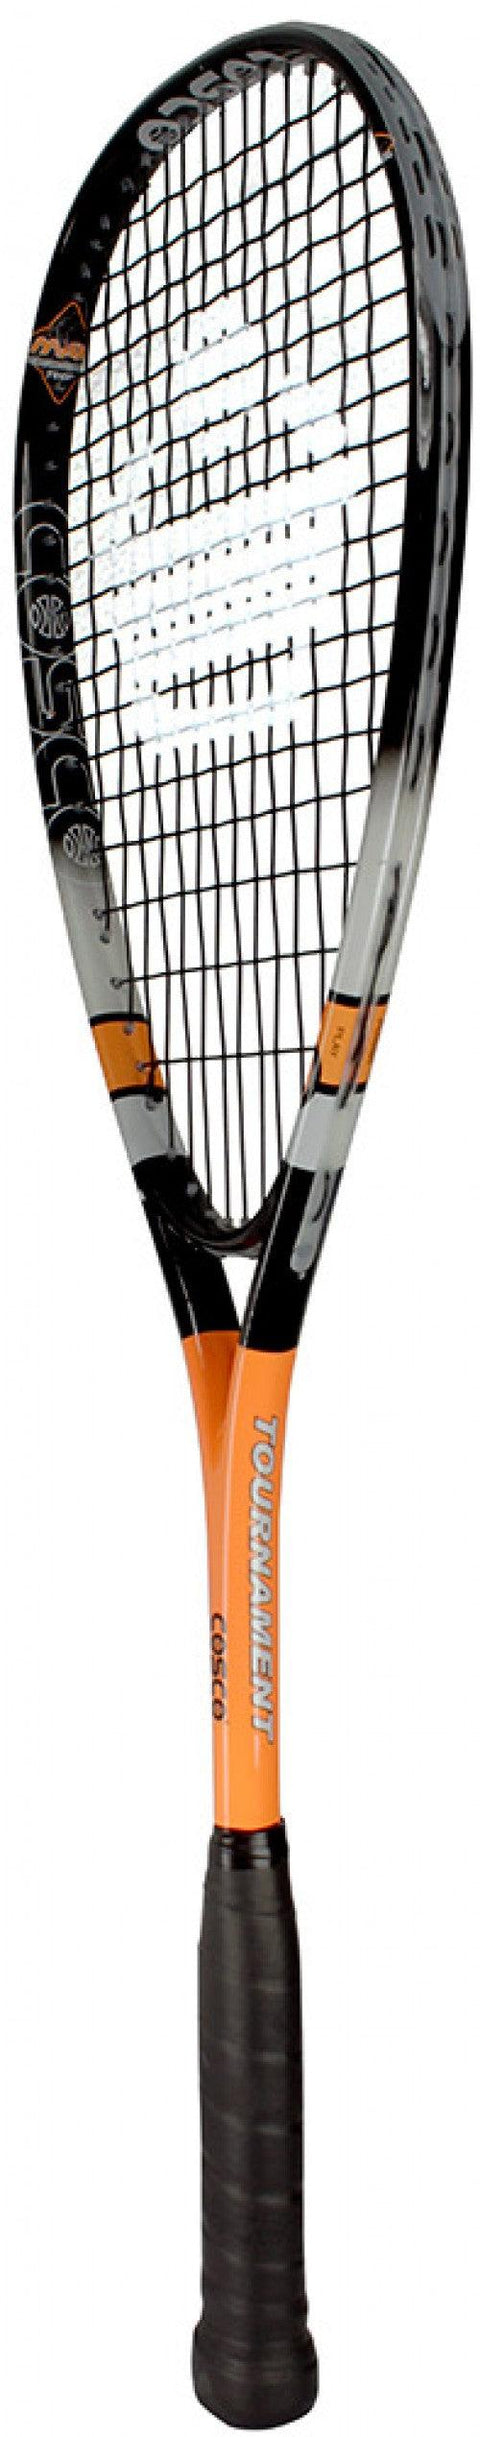 Cosco Tournament Squash Racquet, 76-inch | KIBI Sports - KIBI SPORTS